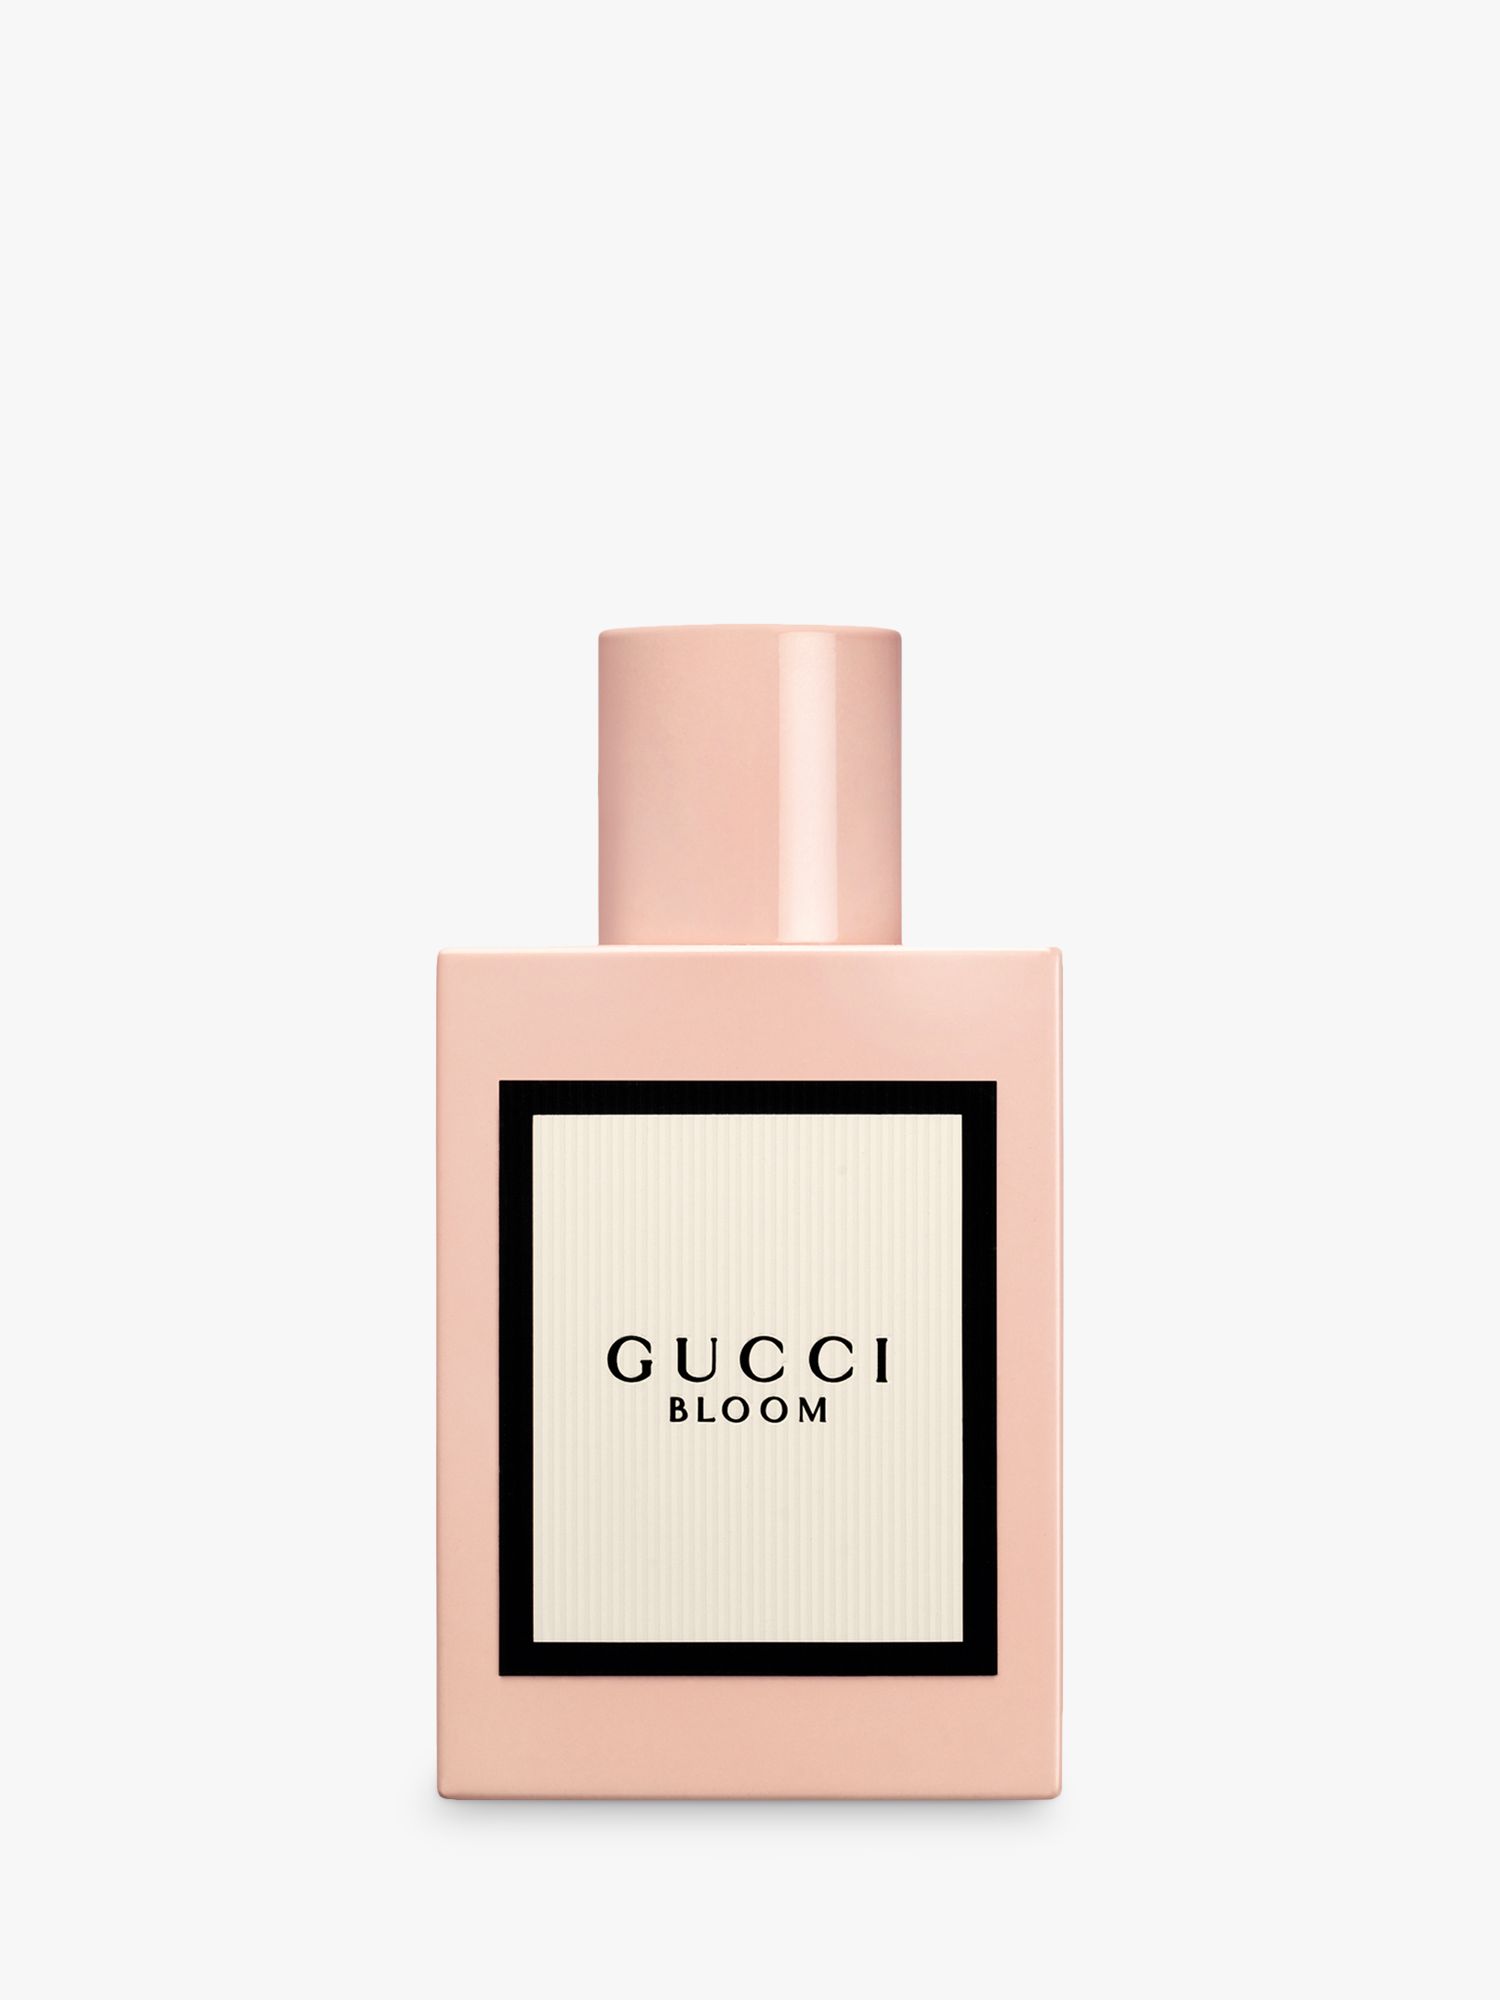 Gucci Bloom Eau de Parfum, 50ml at John Lewis & Partners